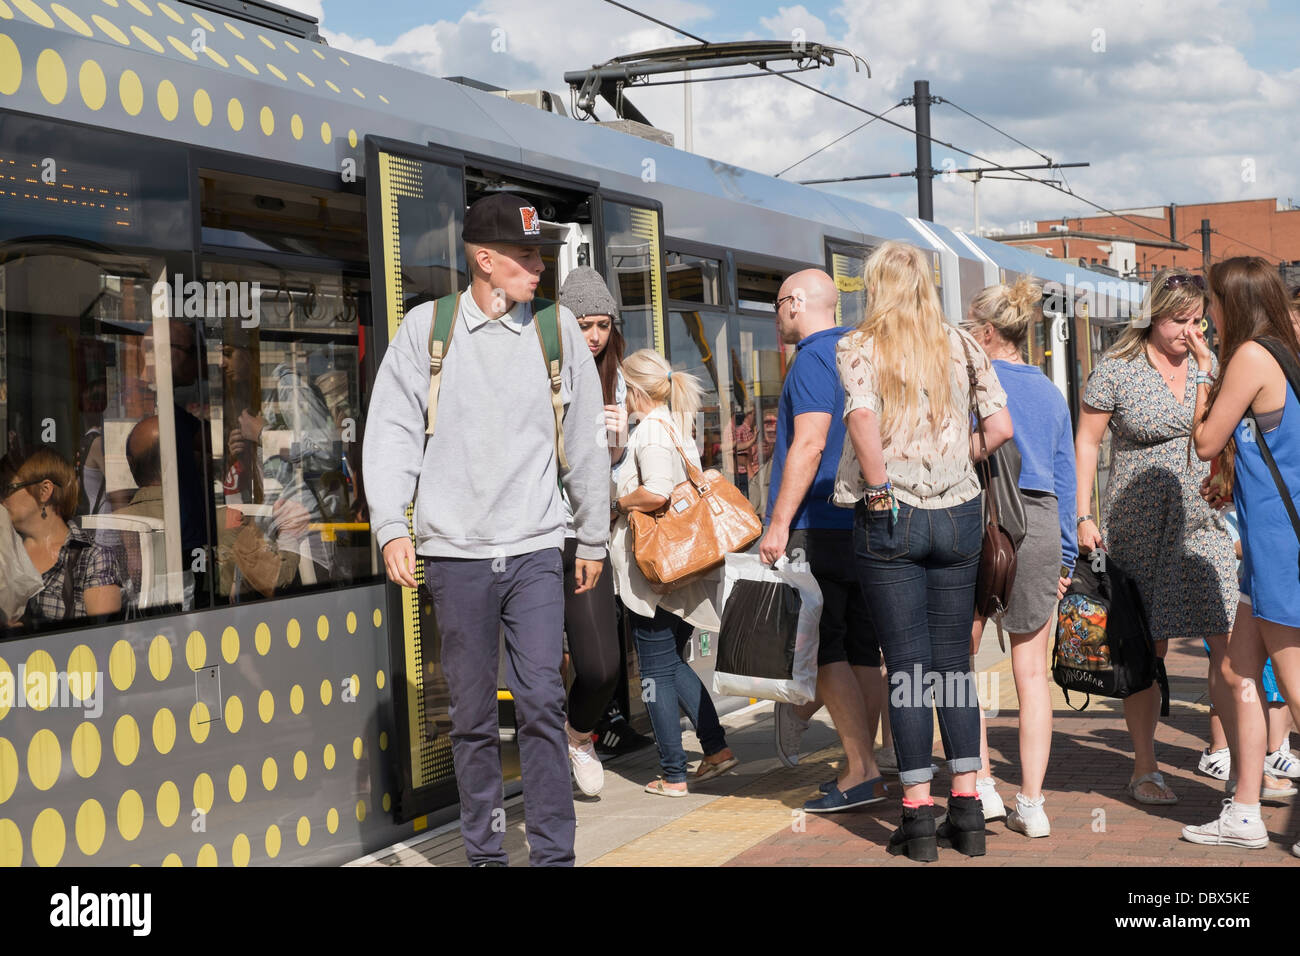 Alltägliche Szene der Passagiere auf überfüllten Plattform mit Menschen an Bord eines Metrolink tram an Deansgate-Castlefield Bahnhof in Manchester City. England Großbritannien Stockfoto